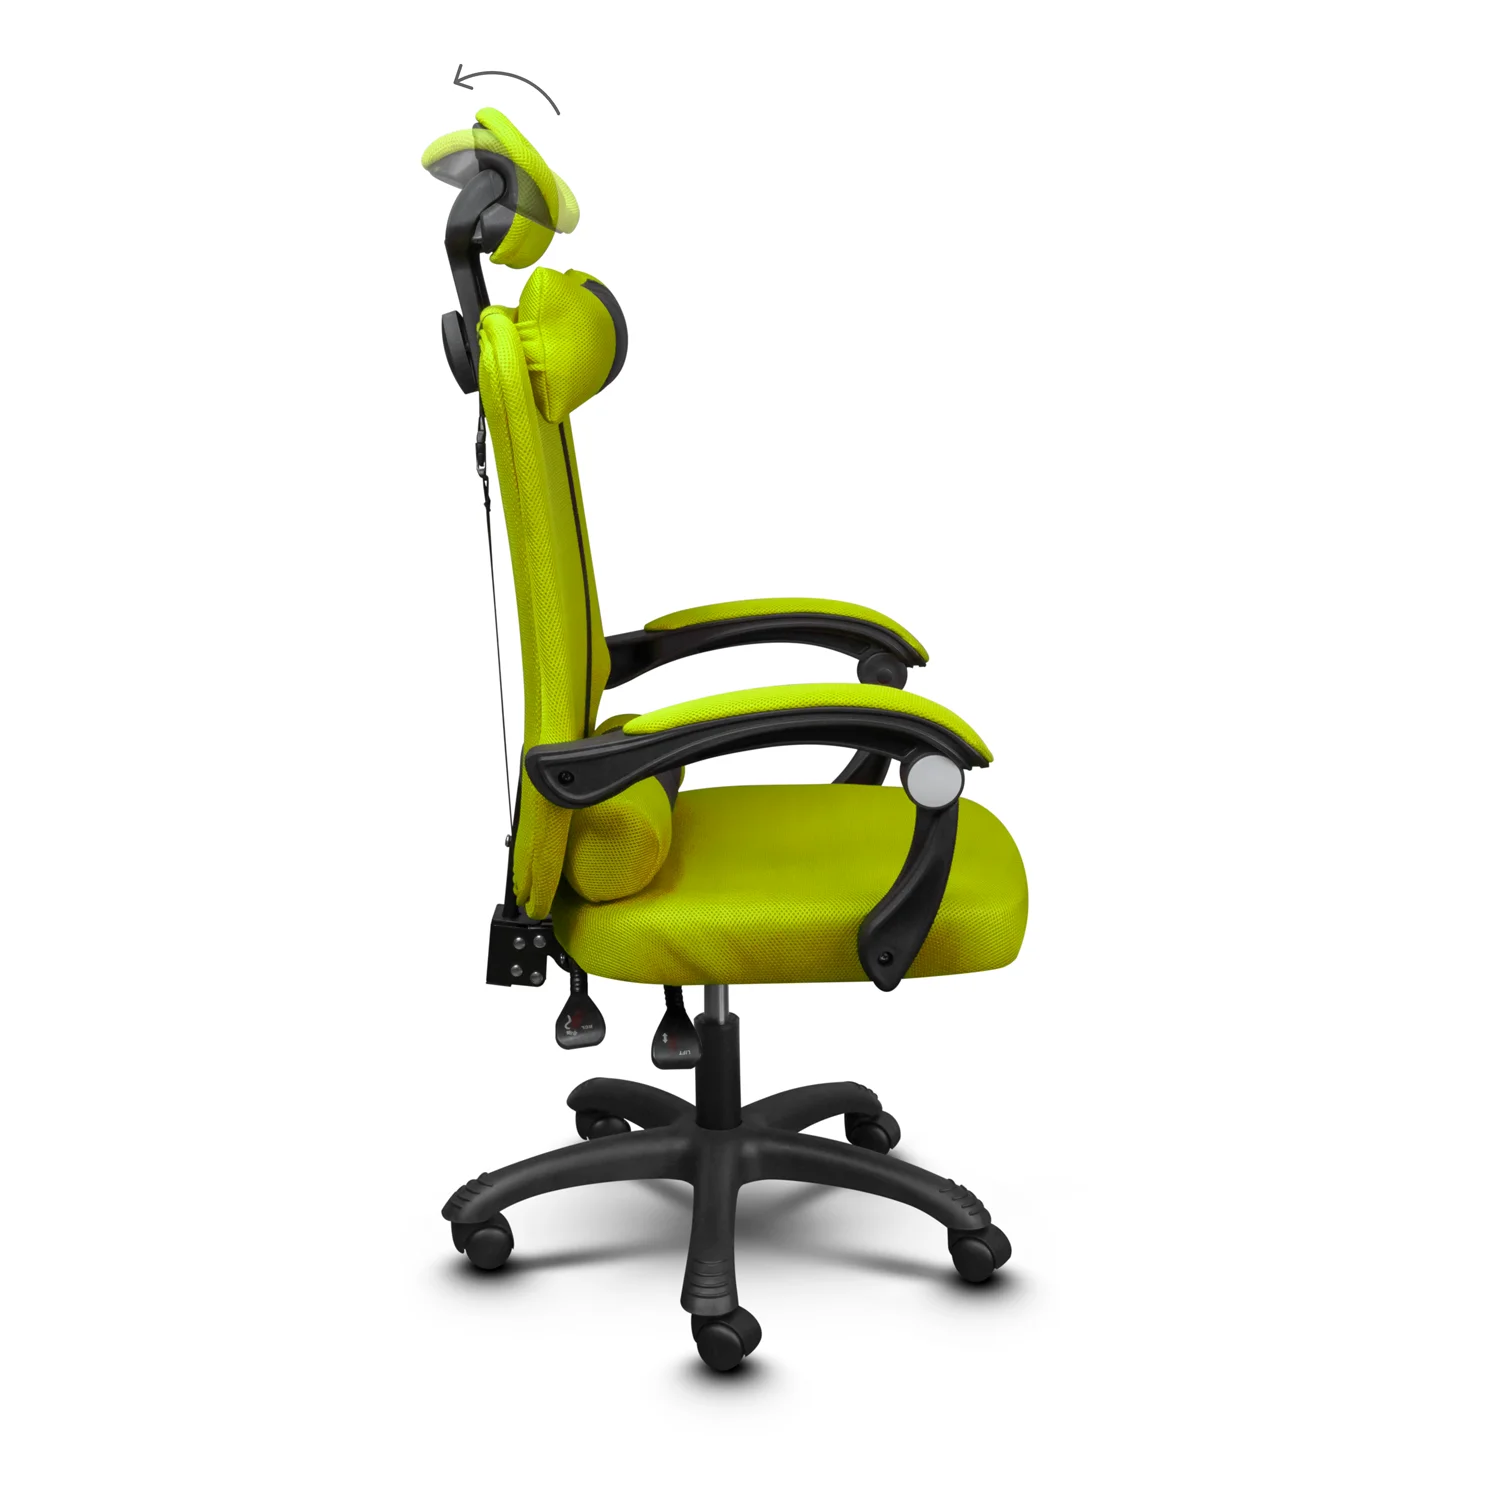 Irodai szék, forgószék zöld (OFFICE-CHAIR-925-GREEN)